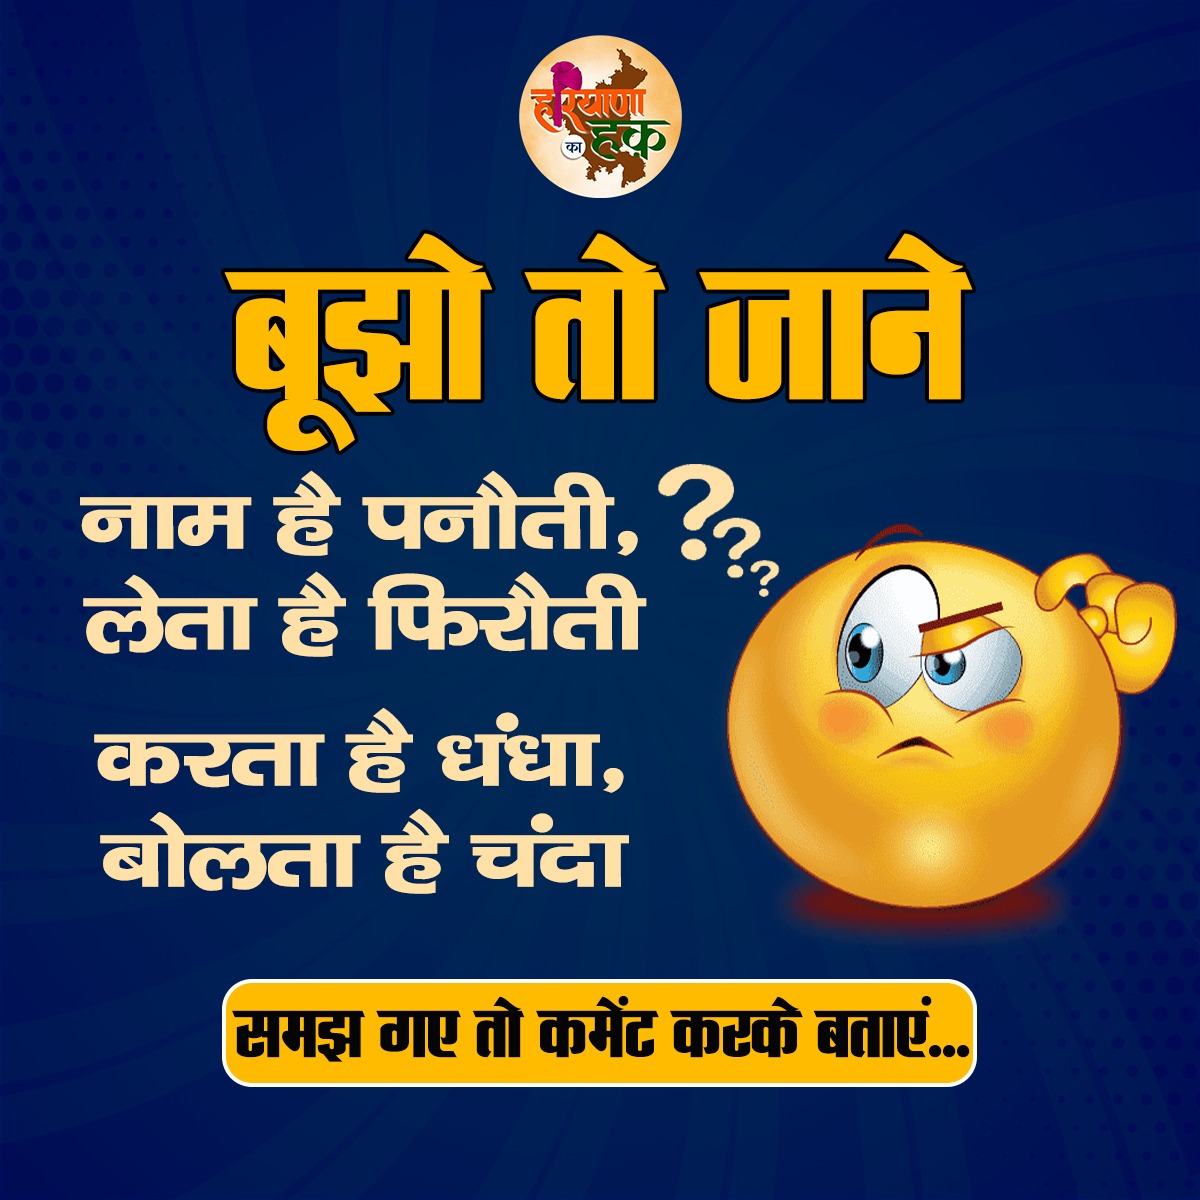 बूझो तो जाने-

अगर आप इस पहेली को समझ गए हैं तो कमेंट में अपना उत्तर दें।
.
.
.
.
.
#HaryanaPolitics
#HaryanaCongress
#haryanakahaq